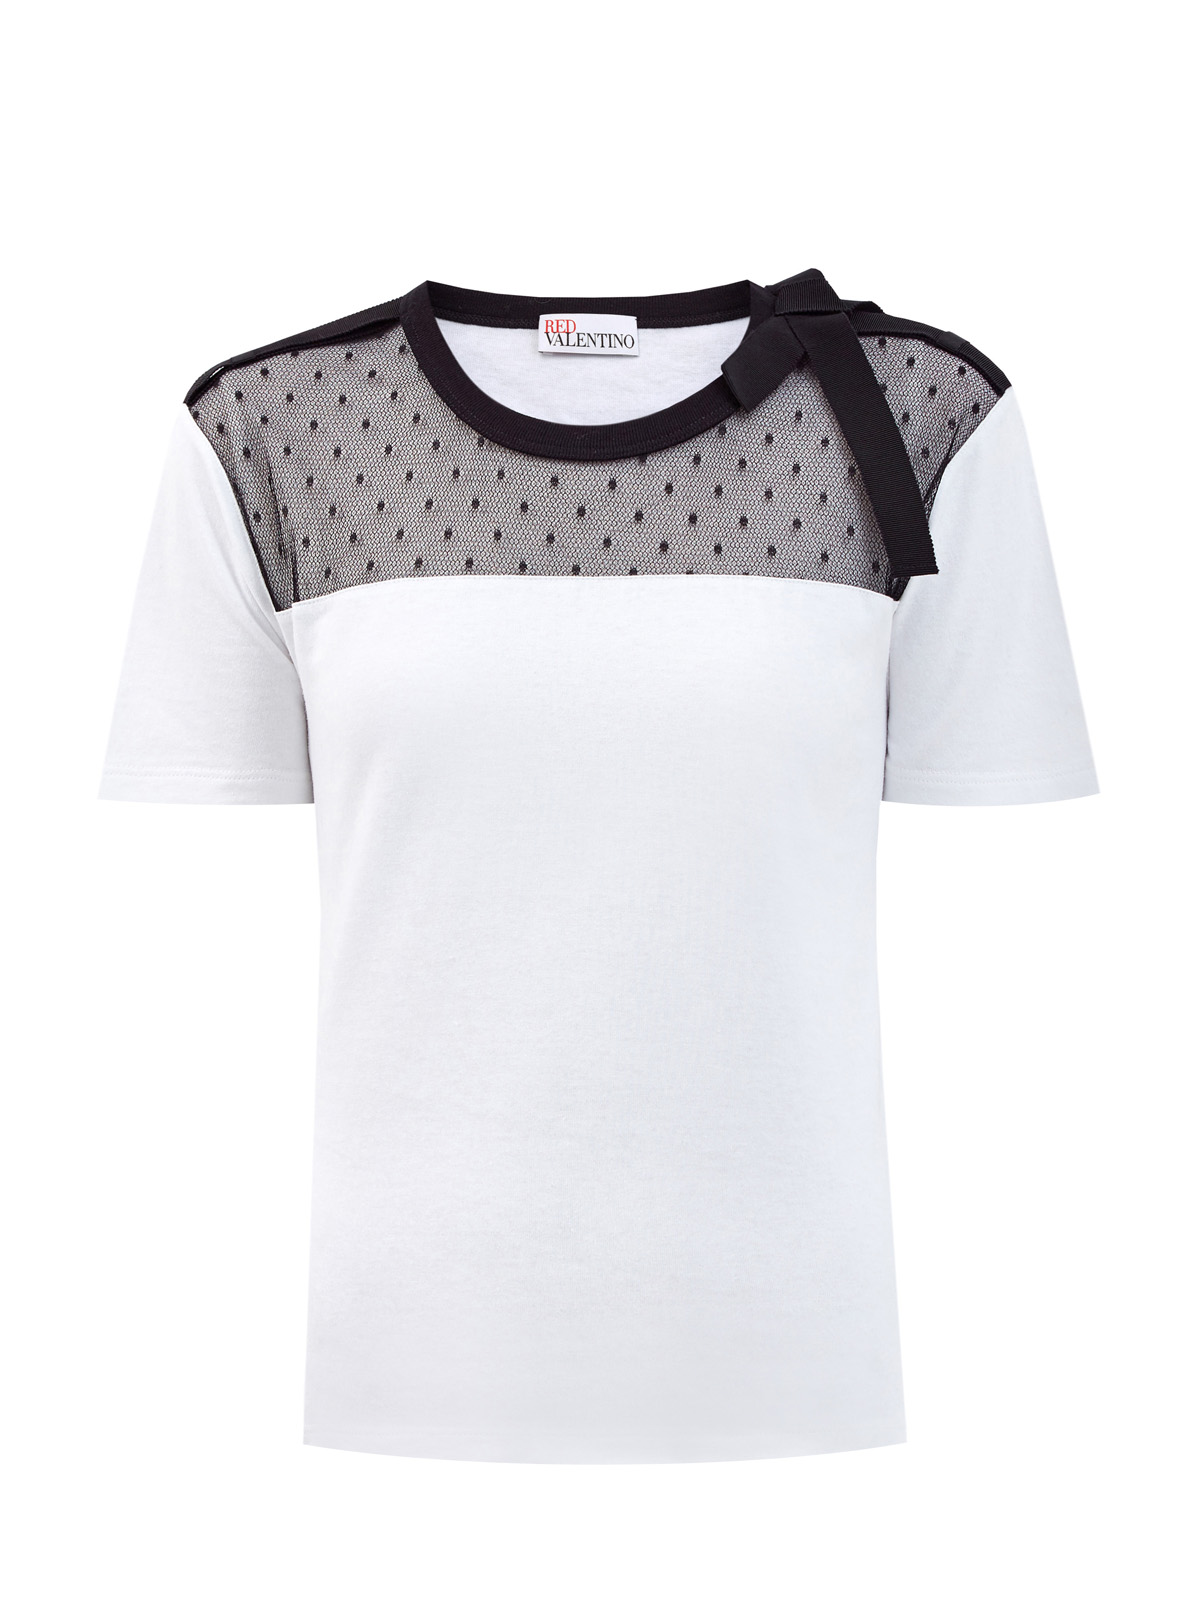 Хлопковая футболка с полупрозрачной вставкой из тюля «пуэн-деспри» REDVALENTINO, цвет белый, размер S;M;XS - фото 1